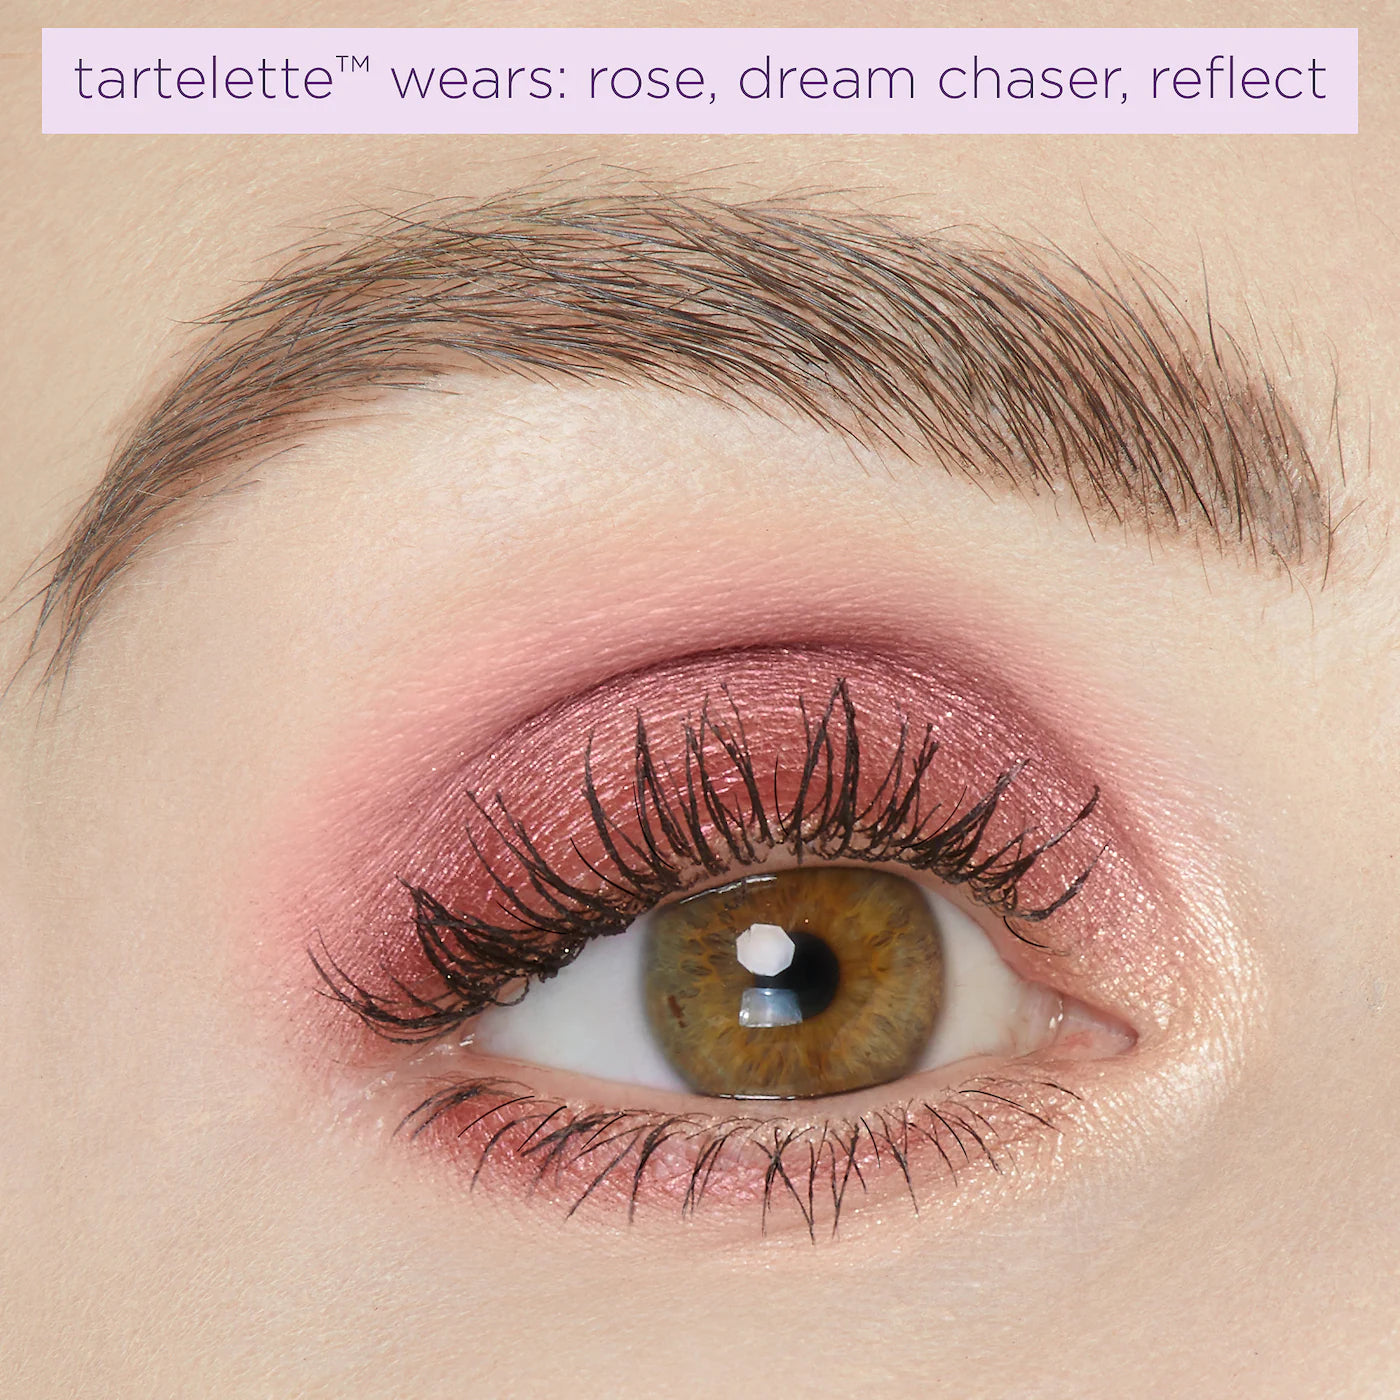 Tarte - Tartelette™ Juicy Amazonian Clay Eyeshadow Palette